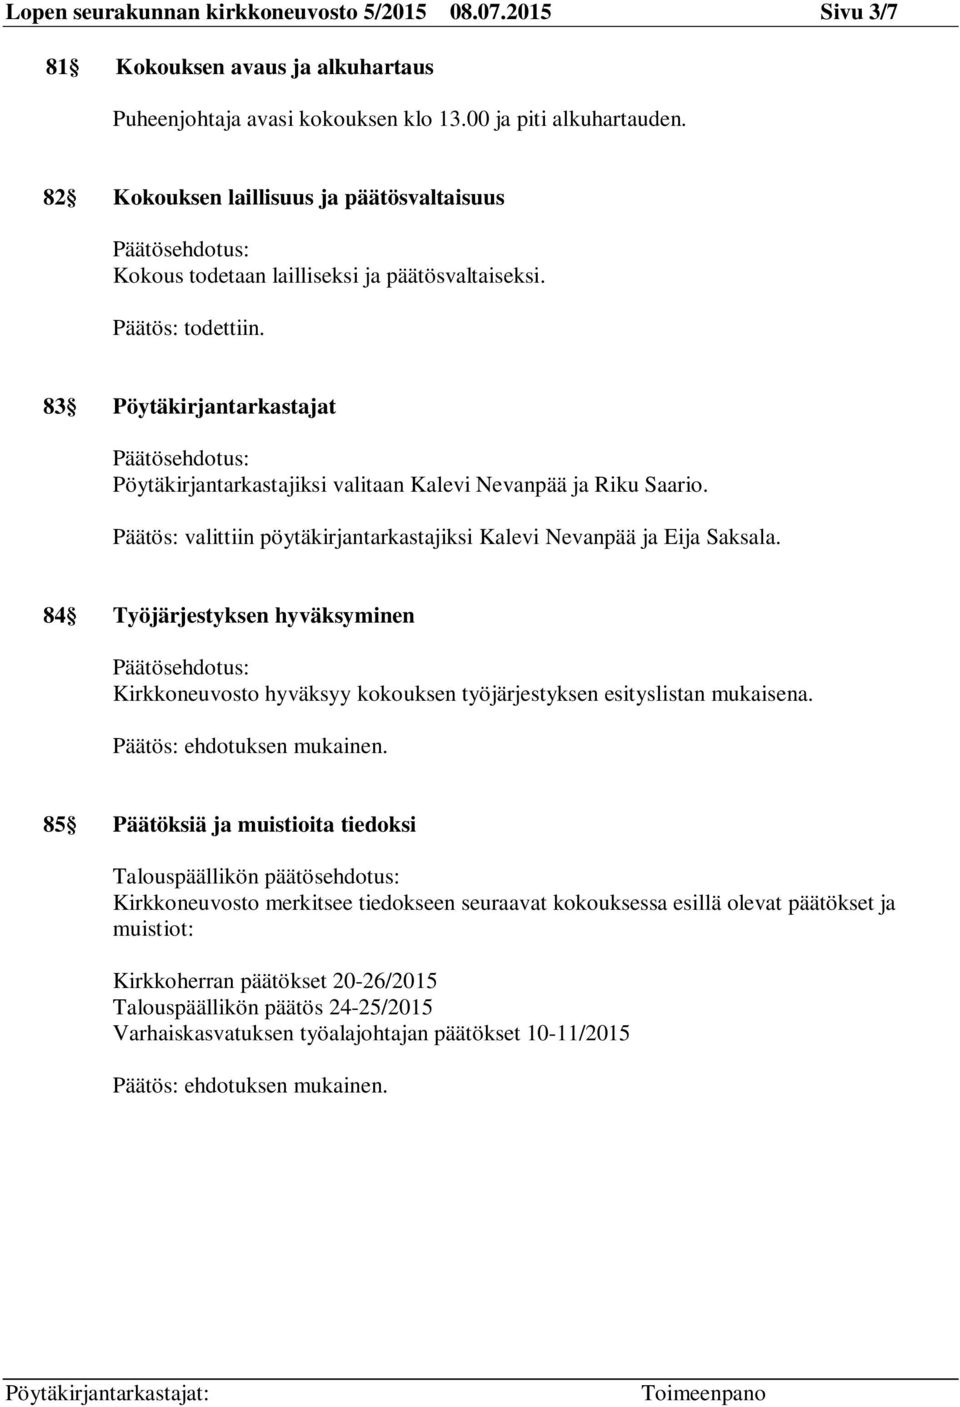 83 Pöytäkirjantarkastajat Päätösehdotus: Pöytäkirjantarkastajiksi valitaan Kalevi Nevanpää ja Riku Saario. Päätös: valittiin pöytäkirjantarkastajiksi Kalevi Nevanpää ja Eija Saksala.